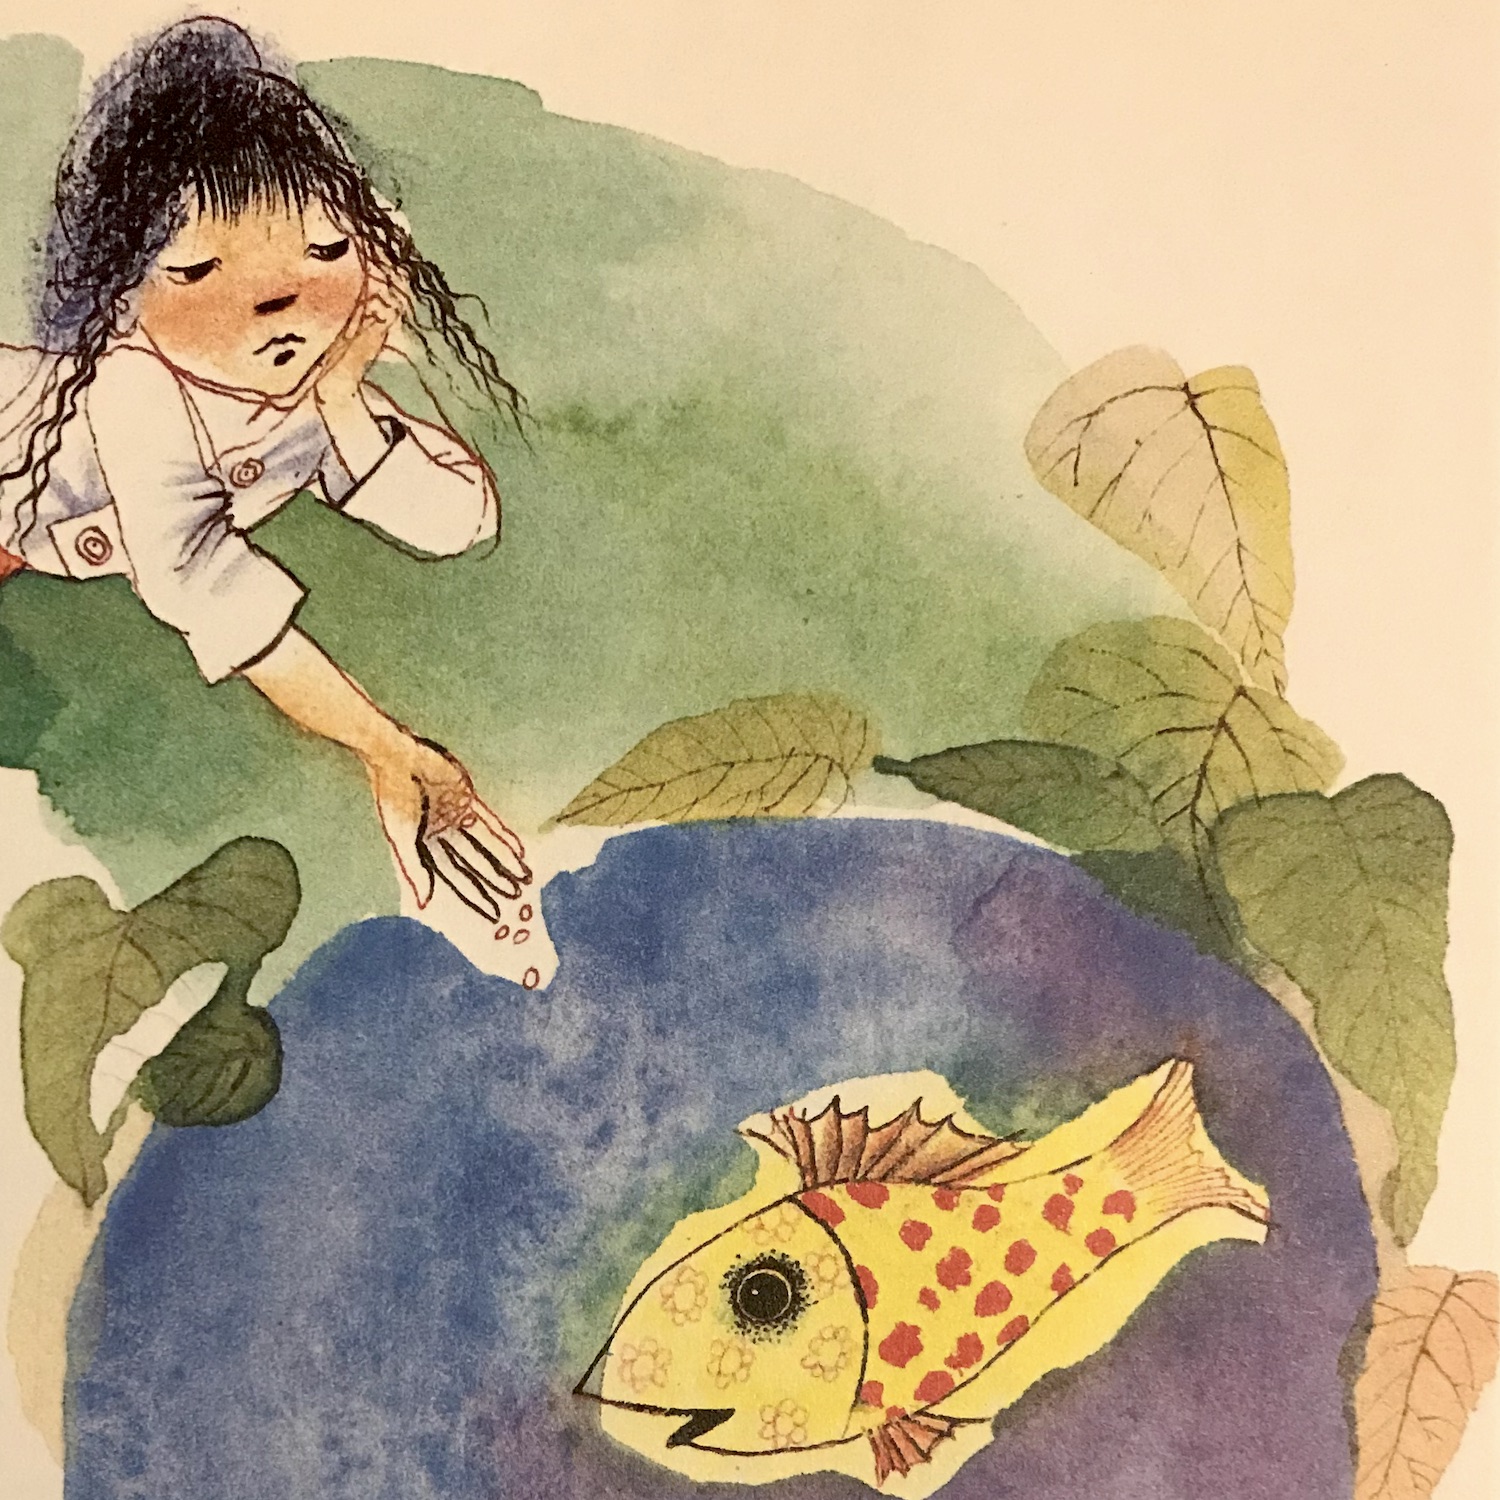 Zeichnung eines Mädchens das einen goldenen Fisch in einem Teich füttert